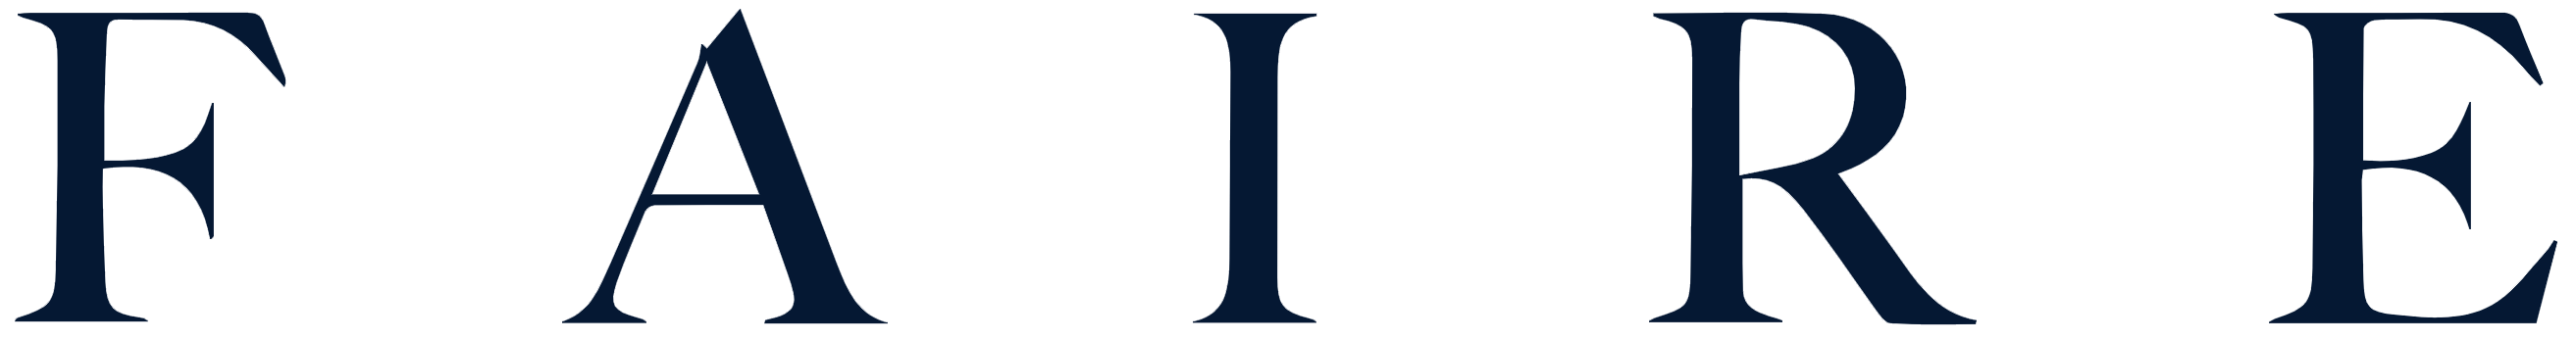 faire-logo-navy